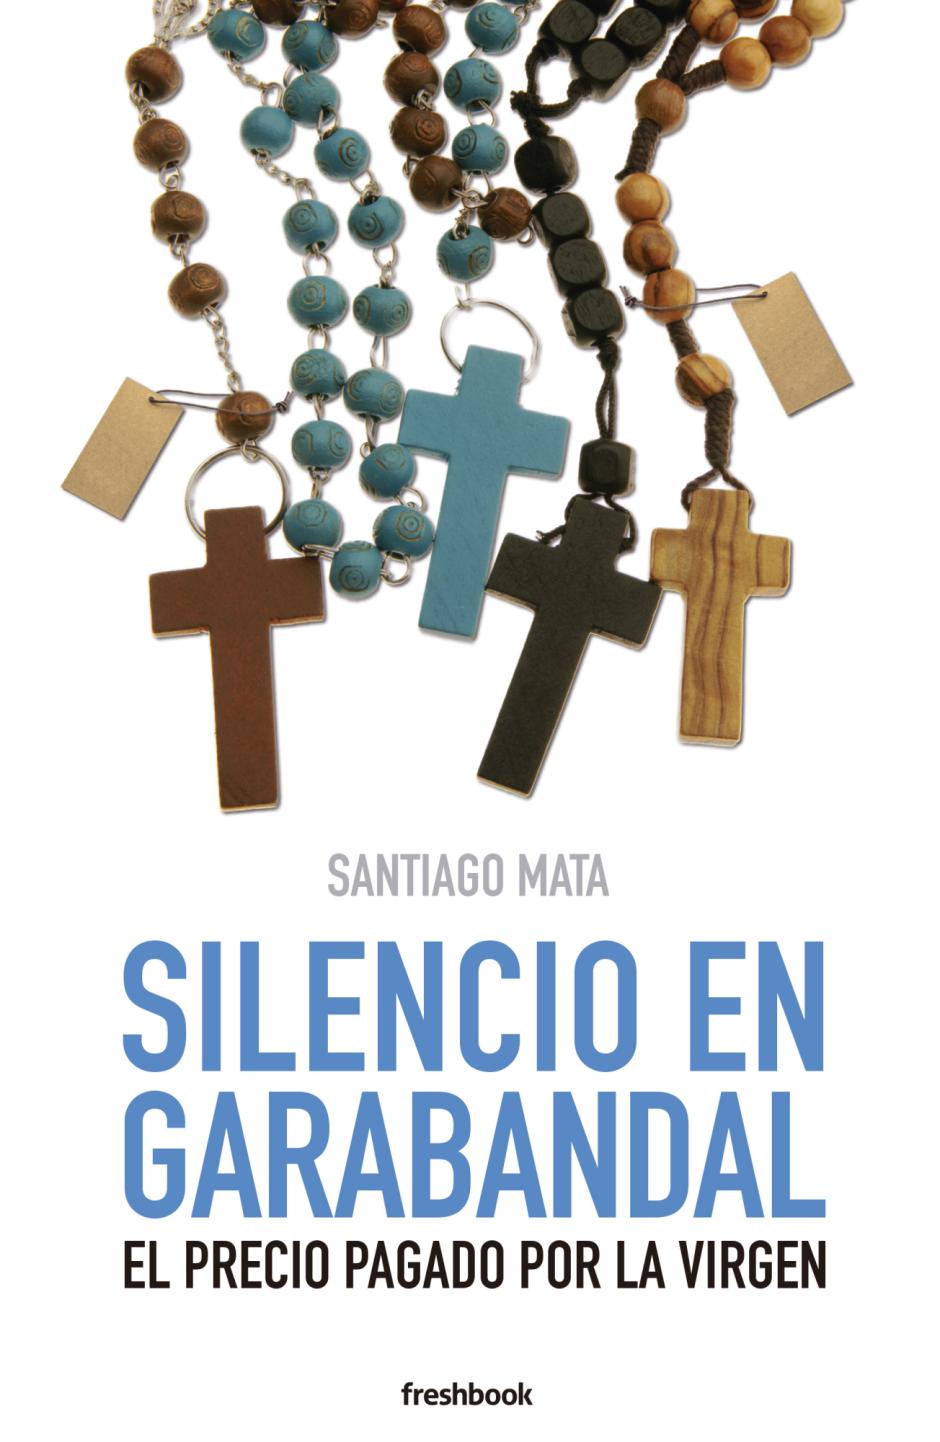 Silencio en Garabandal. De la editorial Freshbook